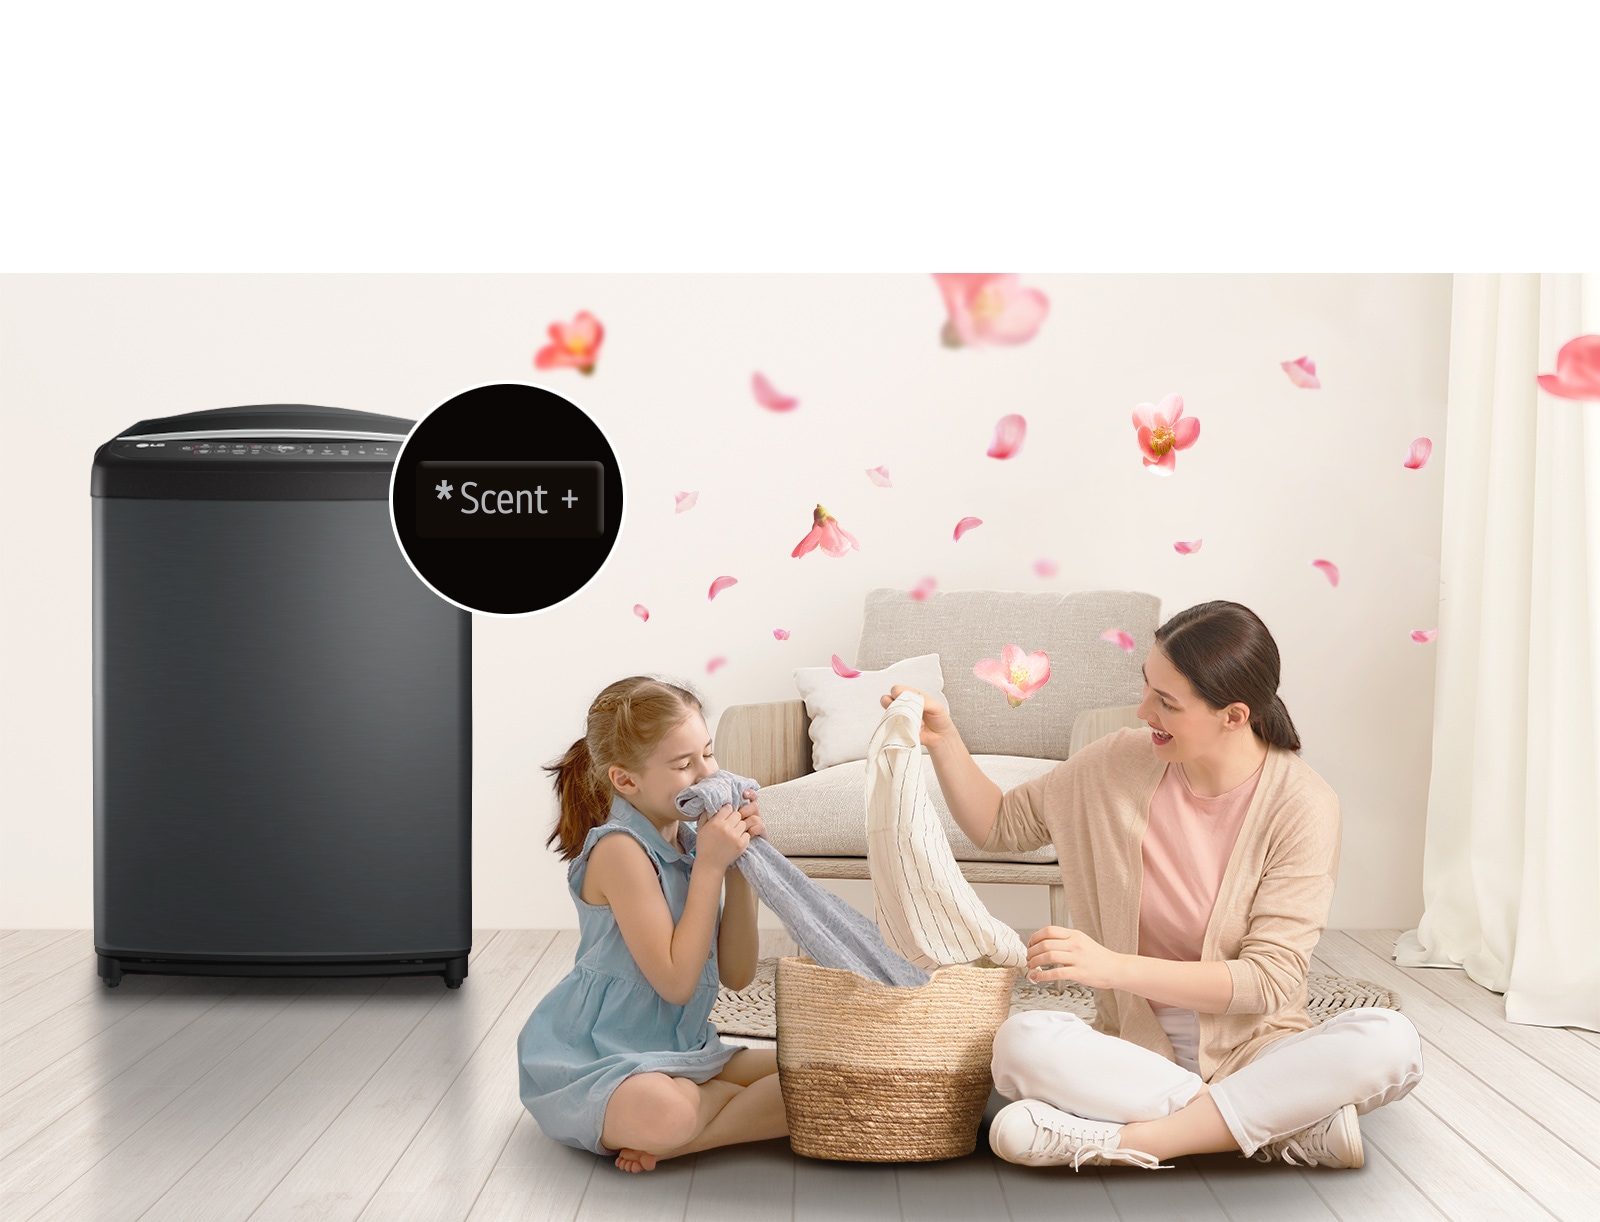 突顯 LG 洗衣機的「芳香」按鈕，母親與女兒坐在地板上，手拿剛從身旁洗衣機取出的毛巾，享受其香氣。花瓣在其周圍飛舞。